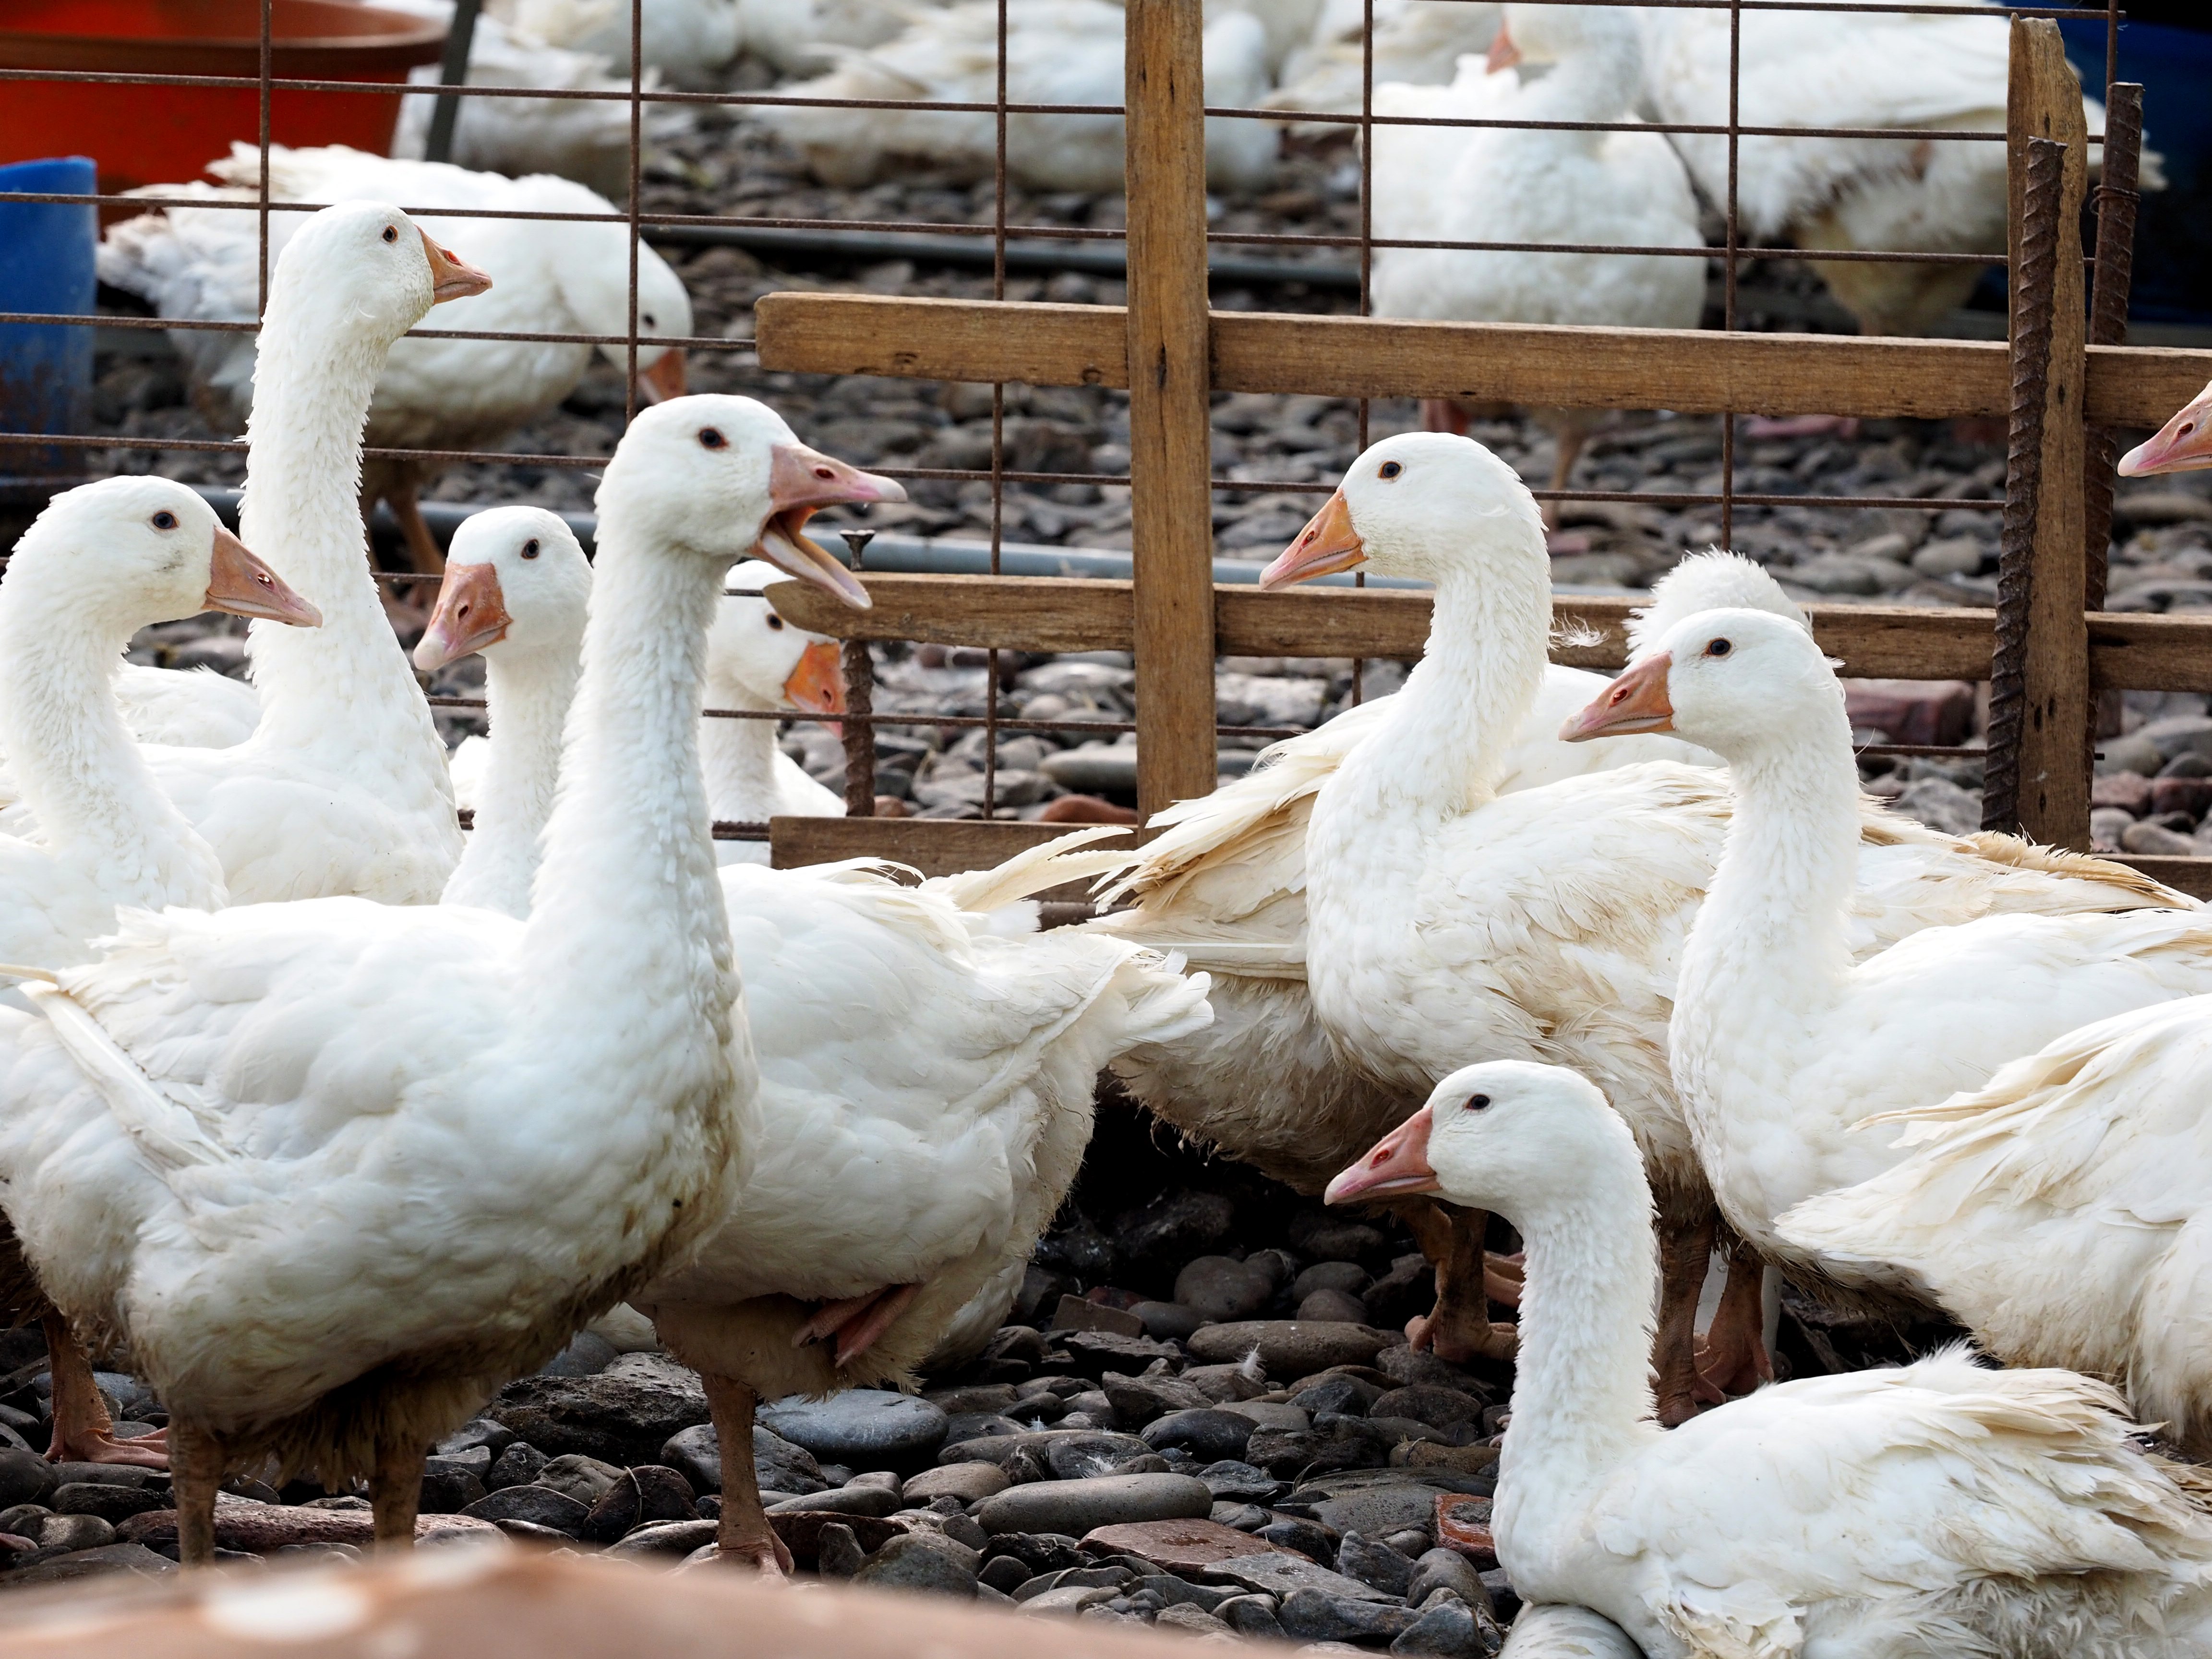 Γρίπη των πτηνών: Η πιο καταστροφική όλων των εποχών στην Ευρώπη - Θανατώθηκαν πάνω από 50 εκατ. πουλιά